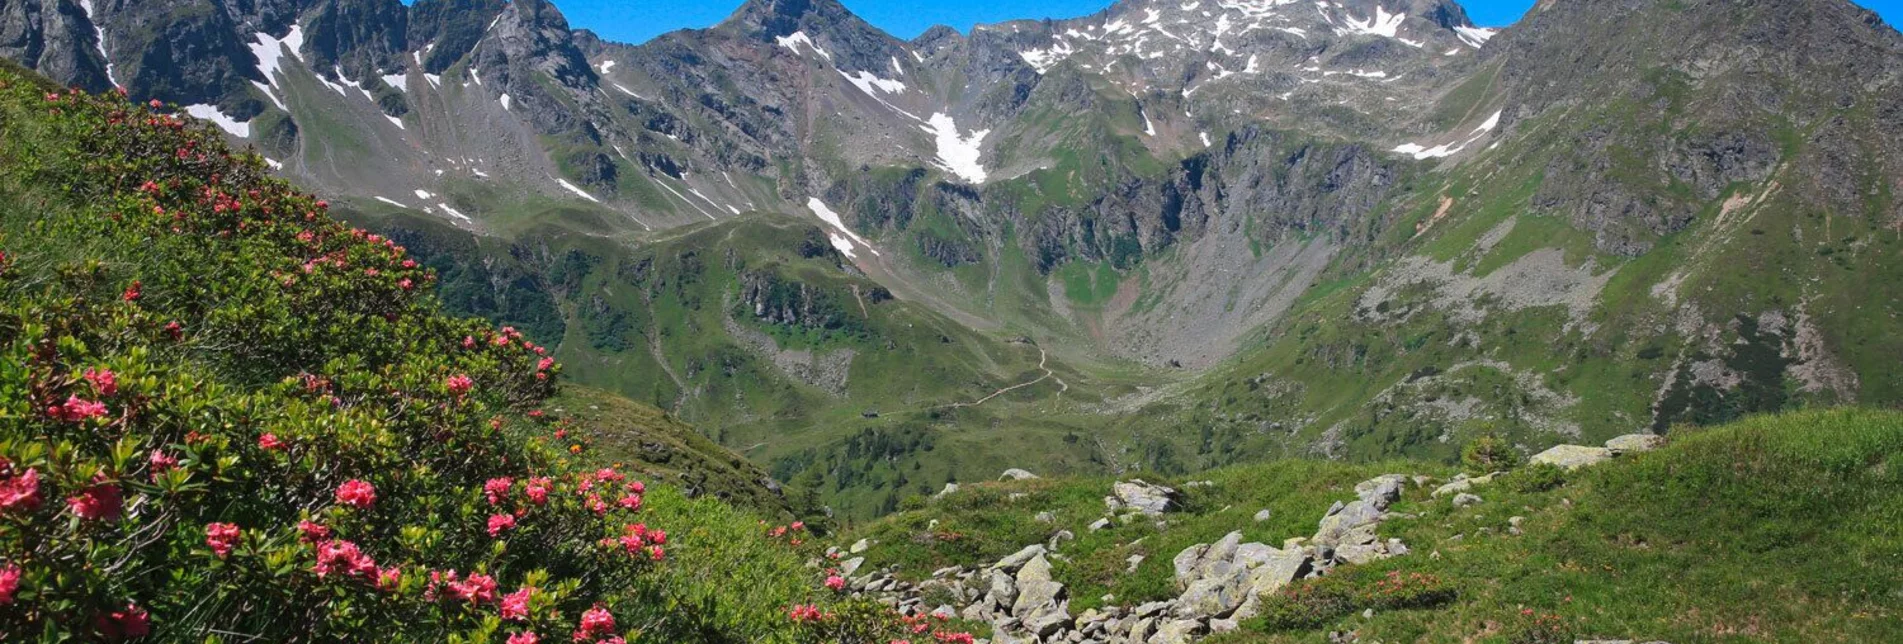 Bergtour Keinprechthütte - Gollinghütte | Schladminger Tauern Höhenweg: Etappe 03 - Touren-Impression #1 | © Tourismusverband Schladming